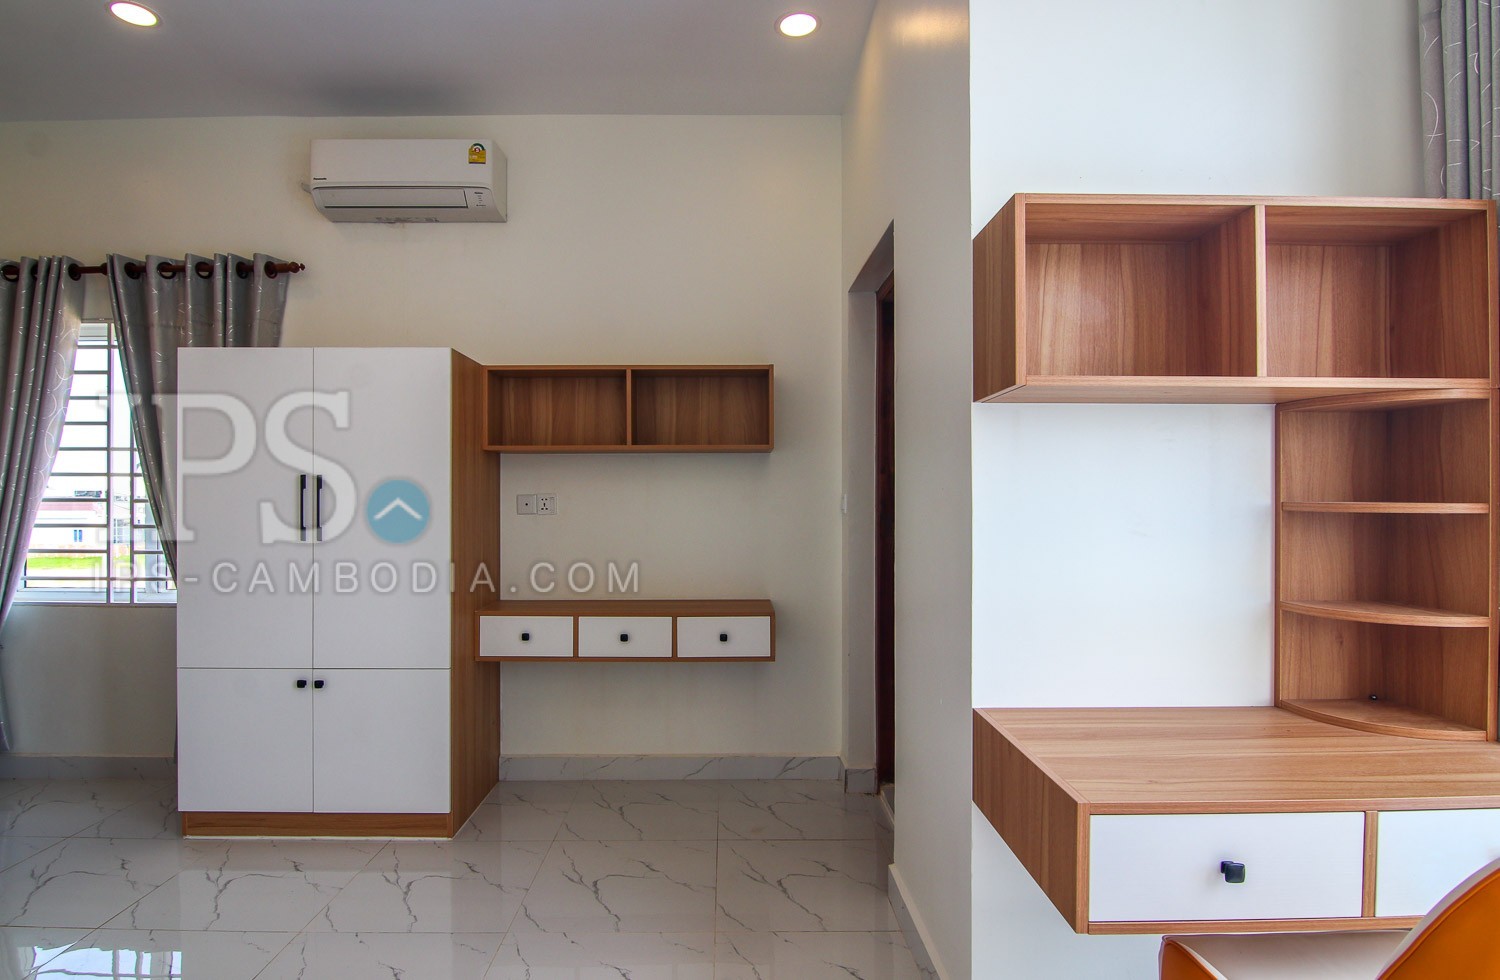 2 Bedroom Flat For Sale - Chreav, Siem Reap thumbnail